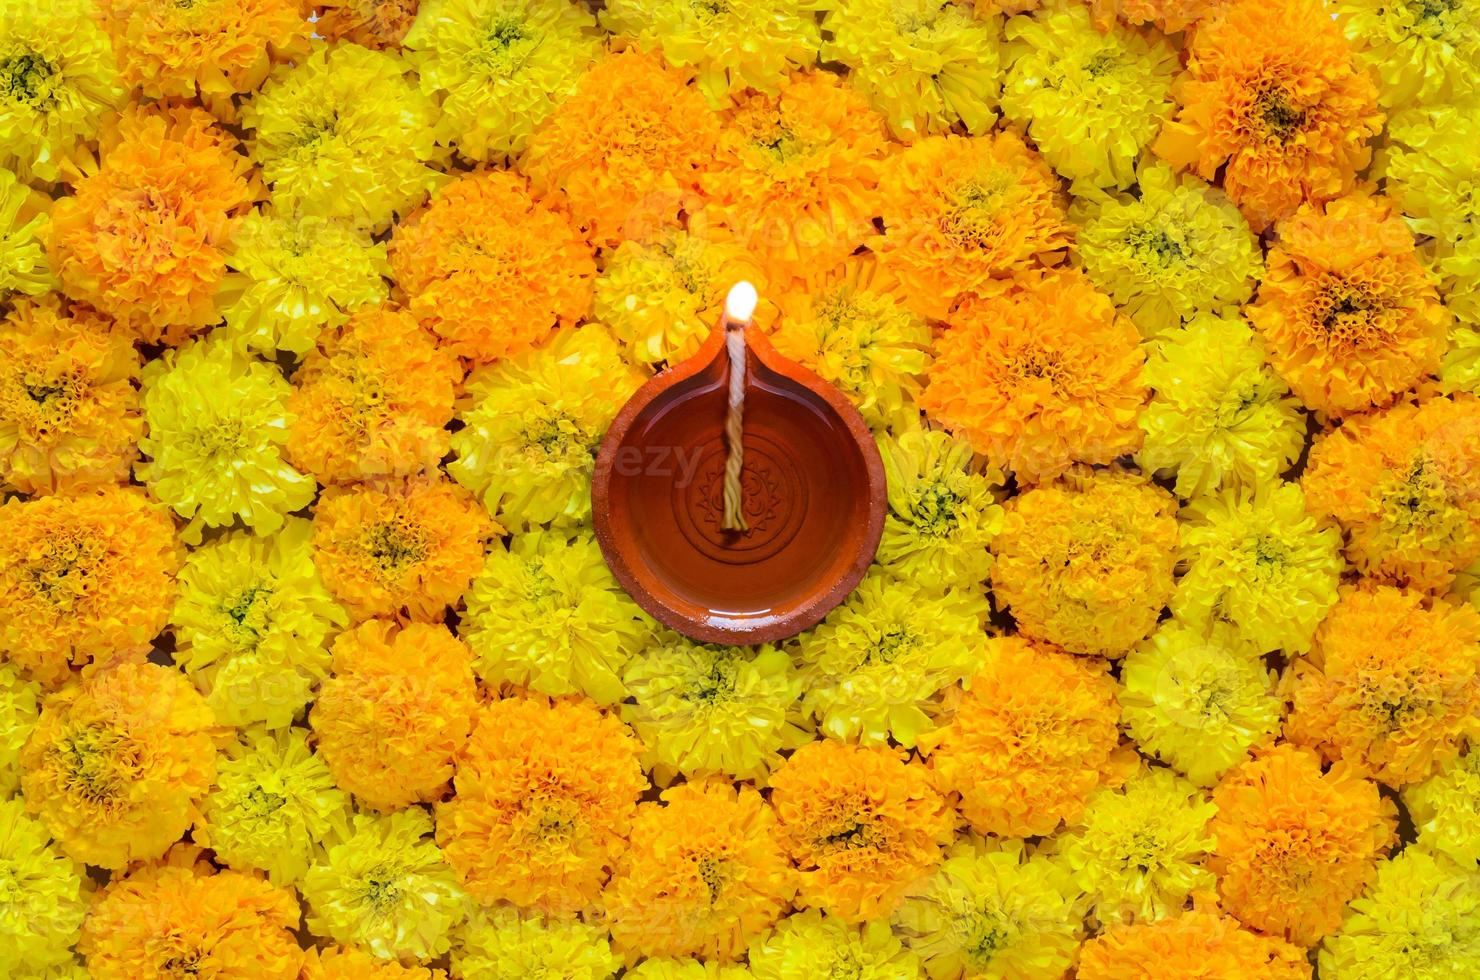 flor de calêndula decorativa rangoli para festival de diwali com lâmpada de argila diya acesa com chama de foco turva. foto